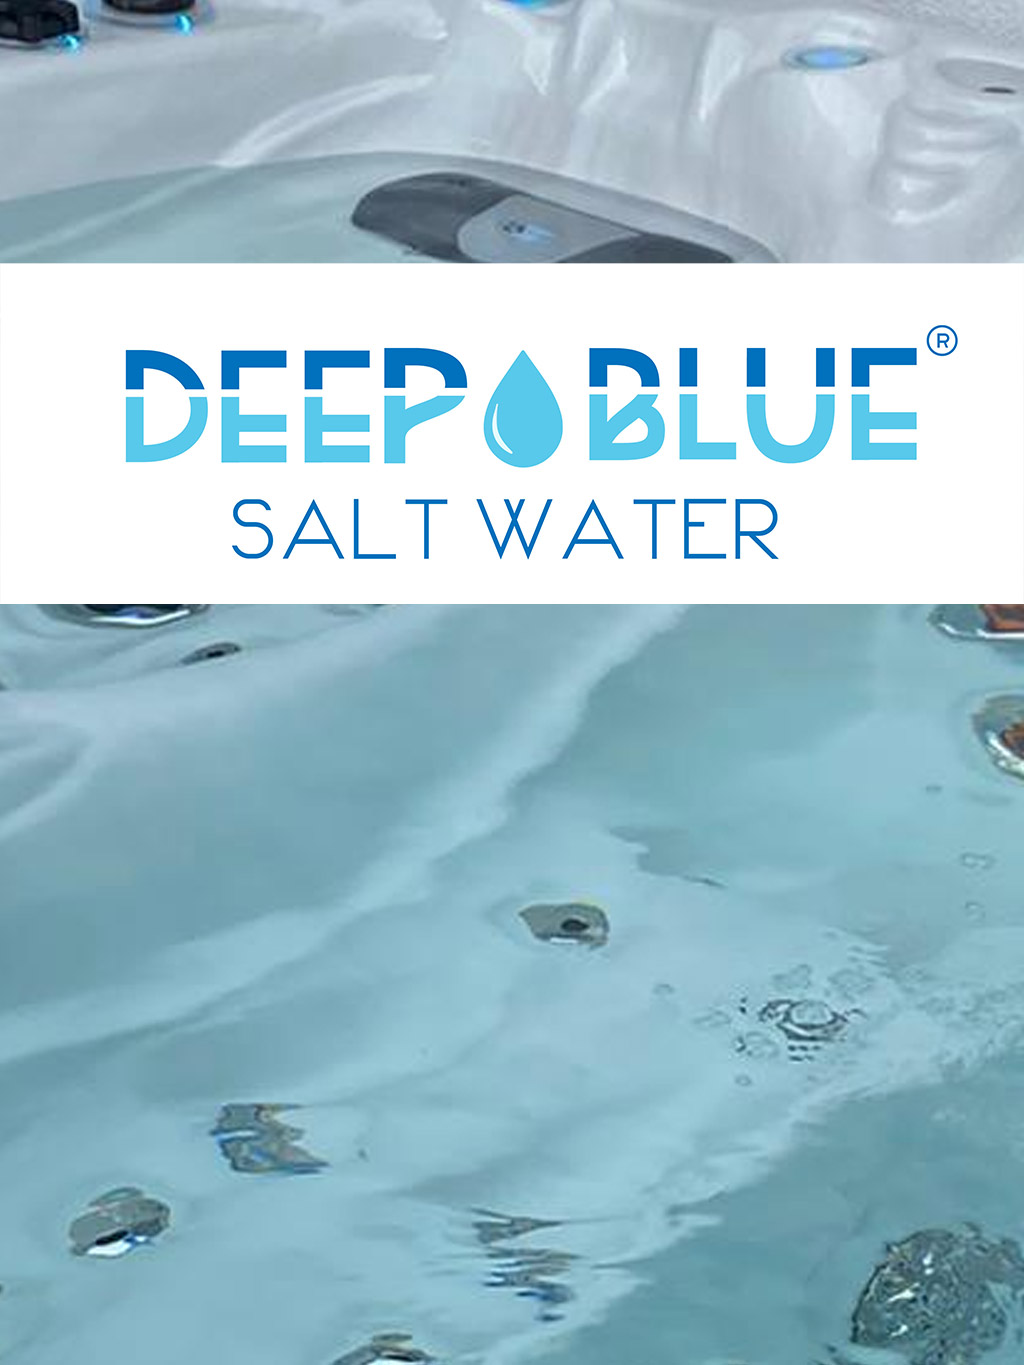 Salzwasseranlage Deep Blue: Next Generation Wasseraufbereitung